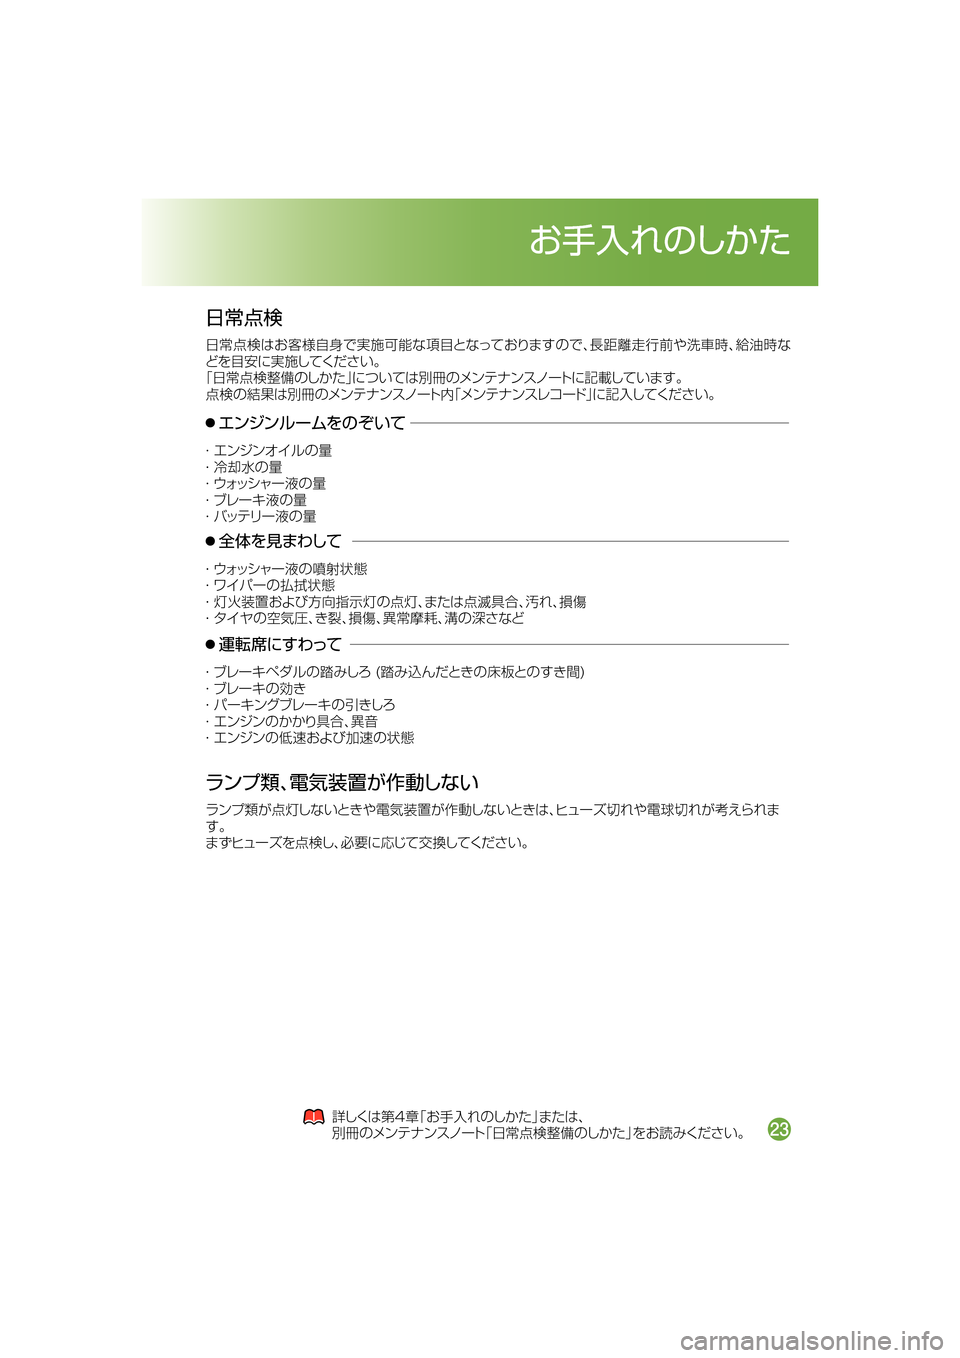 MAZDA MODEL DEMIO 2014  デミオ｜取扱説明書 (in Japanese) Ô	×:U
